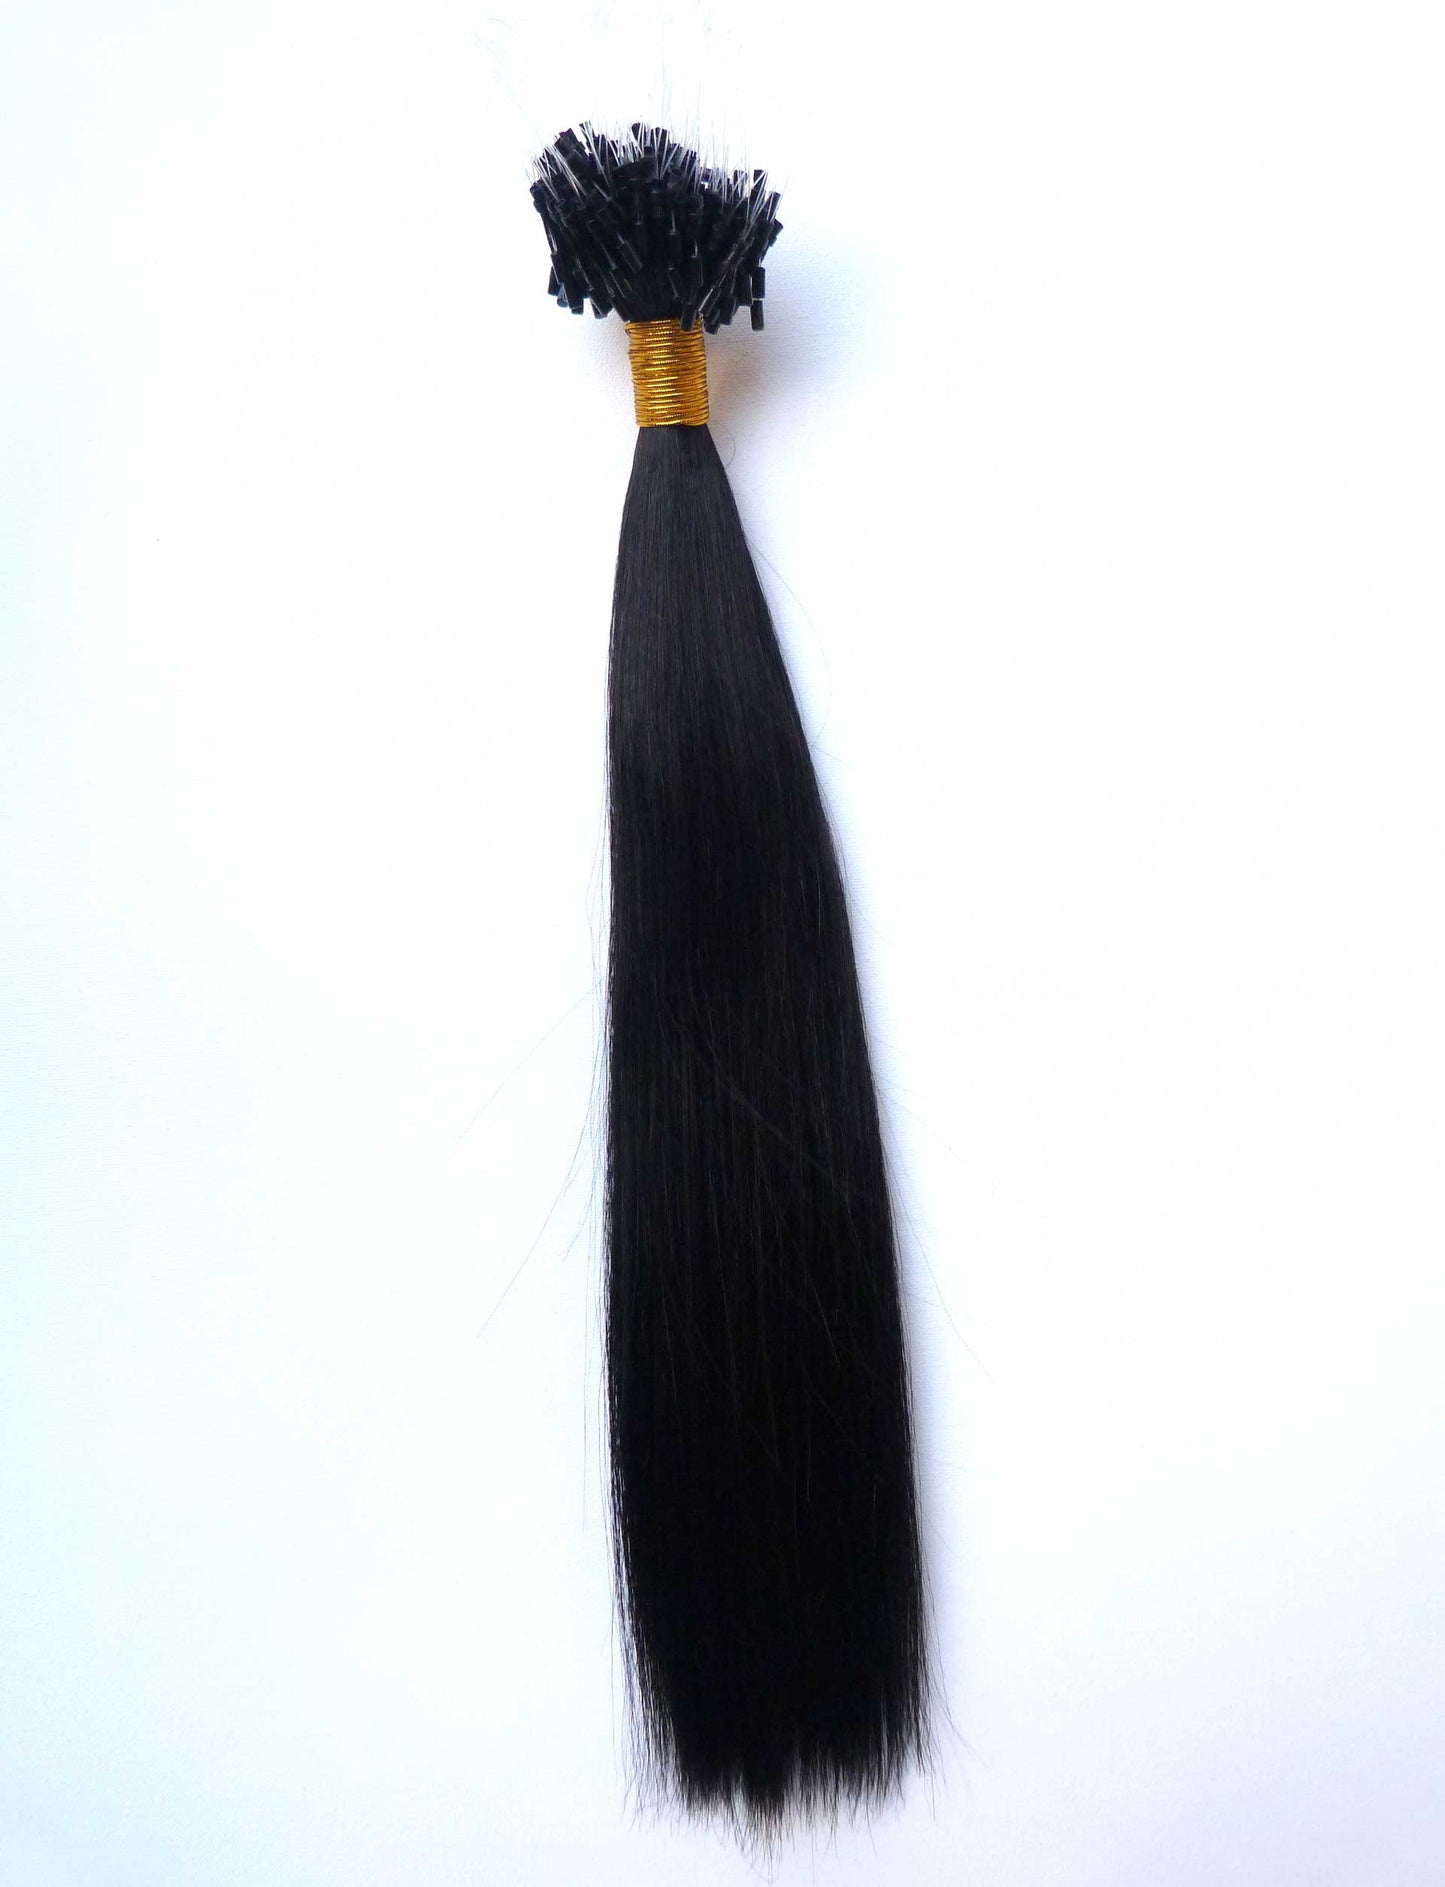 Brasilianische Echthaarverlängerungen – Micro-Loop-Extensions – Virgin Hair & Beauty, die besten Haarverlängerungen, echtes Echthaar.